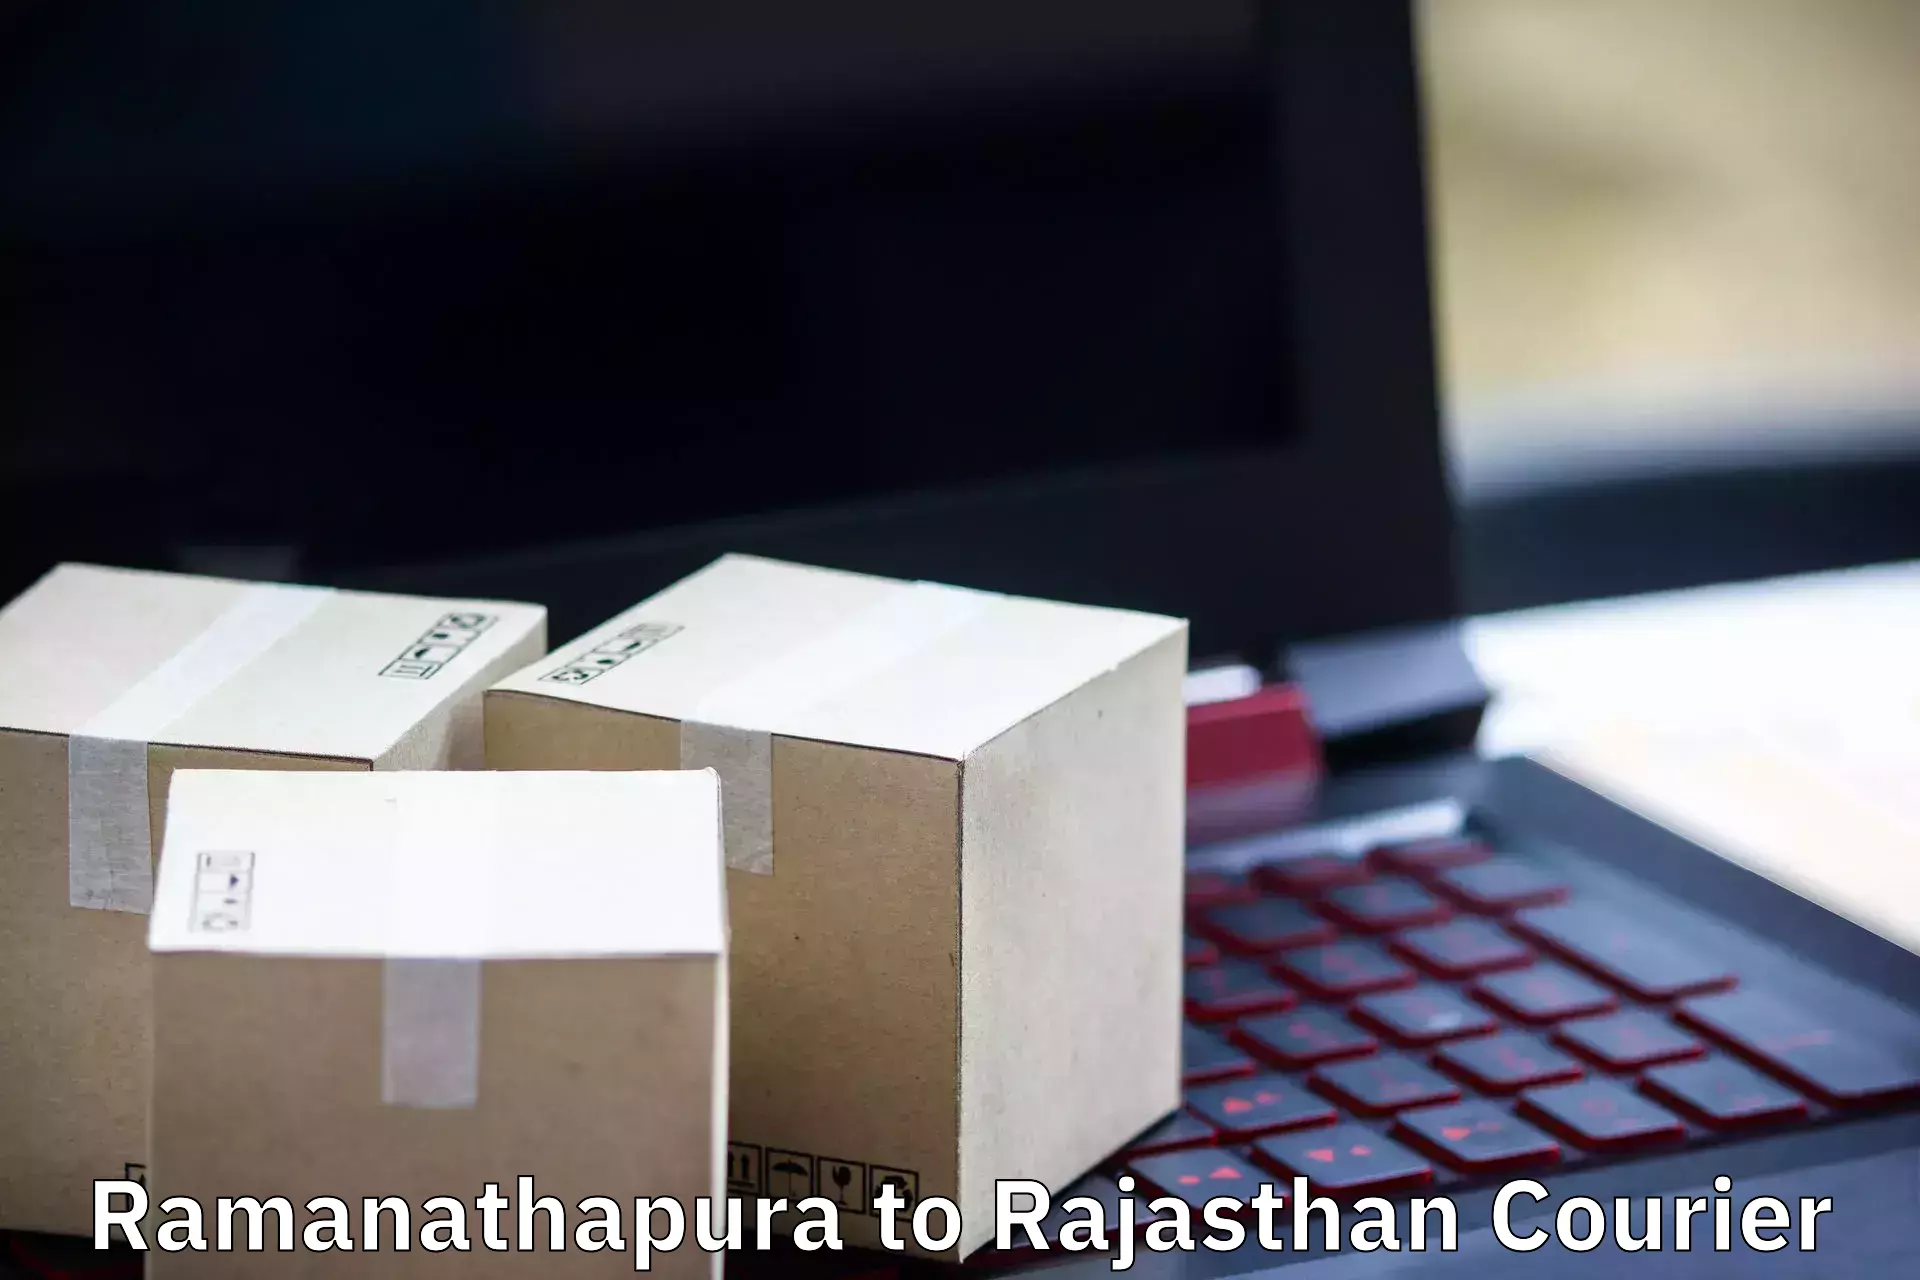 Trusted moving company Ramanathapura to Renwal